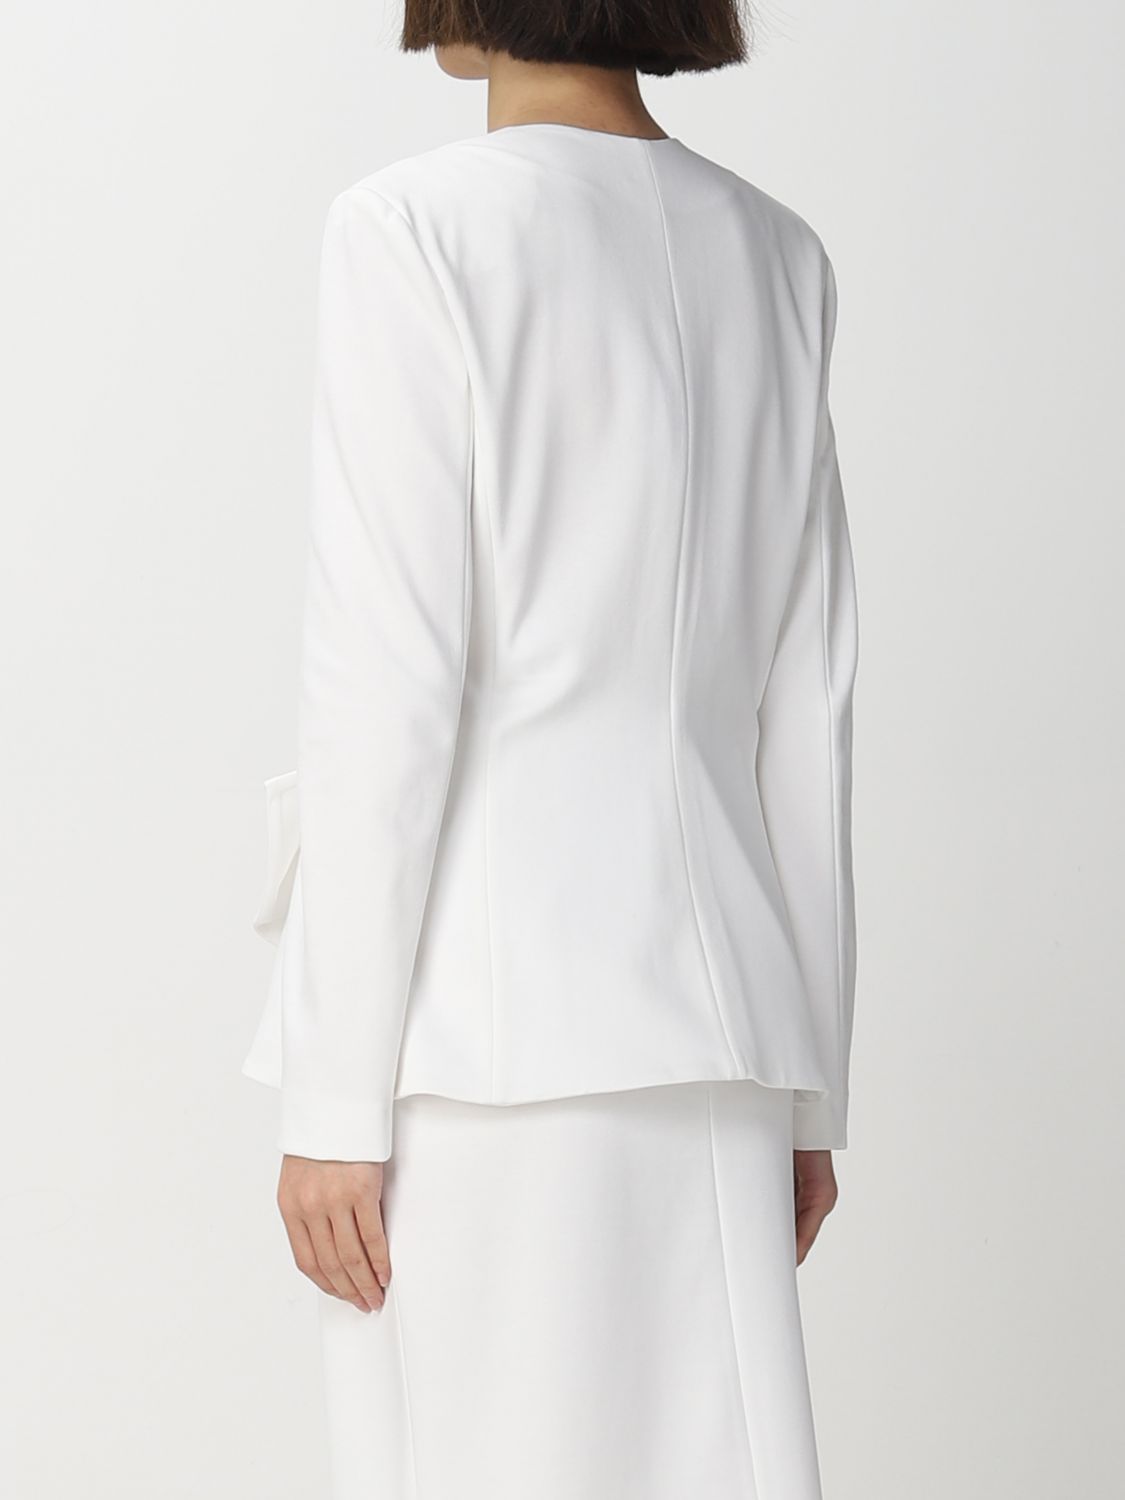 EMPORIO ARMANI: blazer for women - White | Emporio Armani blazer ...